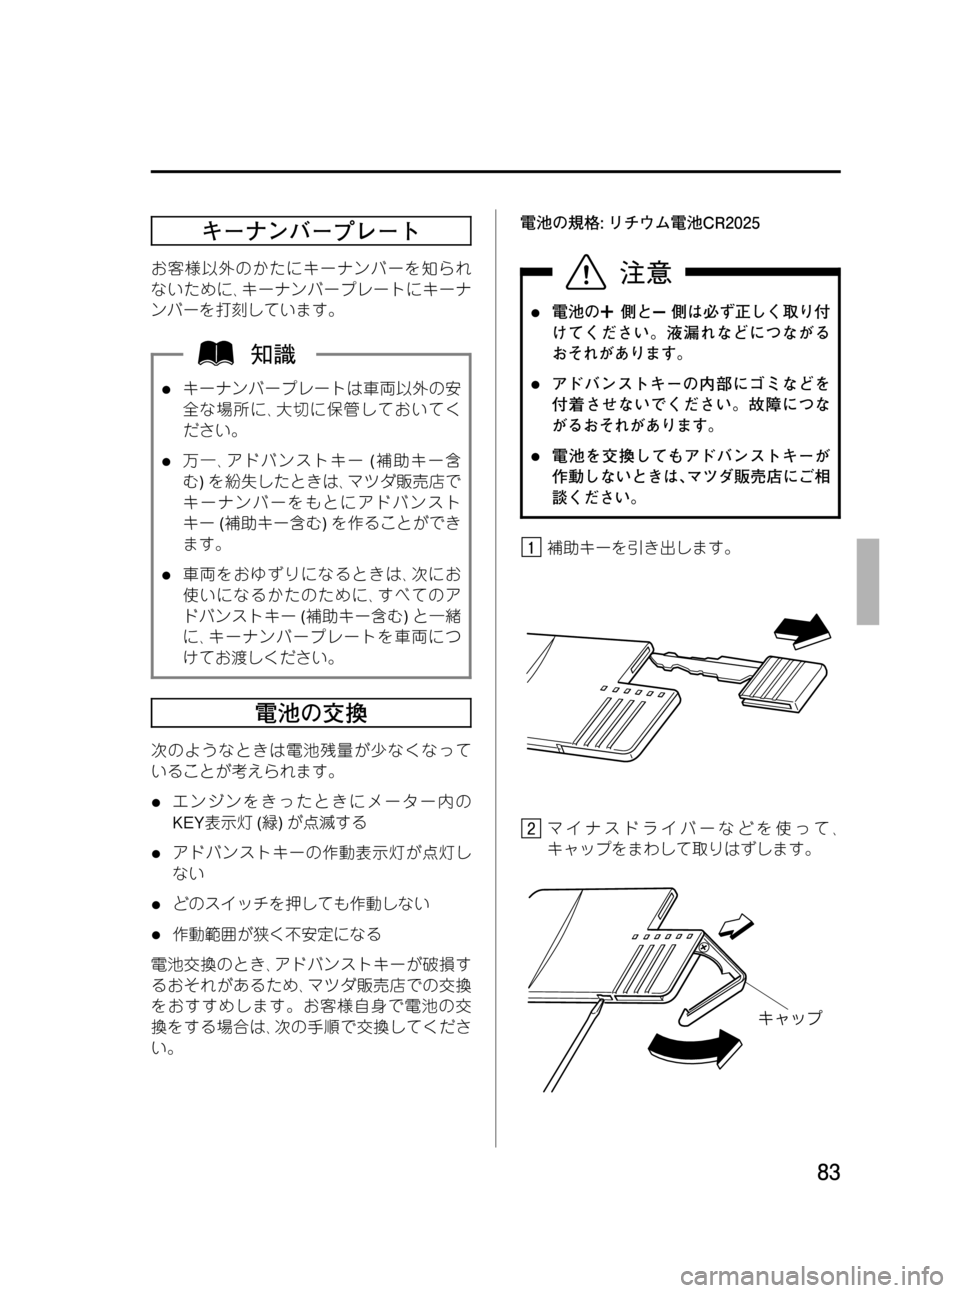 MAZDA MODEL RX 8 2008  取扱説明書 (in Japanese) Black plate (83,1)
キーナンバープレート
お客様以外のかたにキーナンバーを知られ
ないために､キーナンバープレートにキーナ
ンバーを打刻していま�